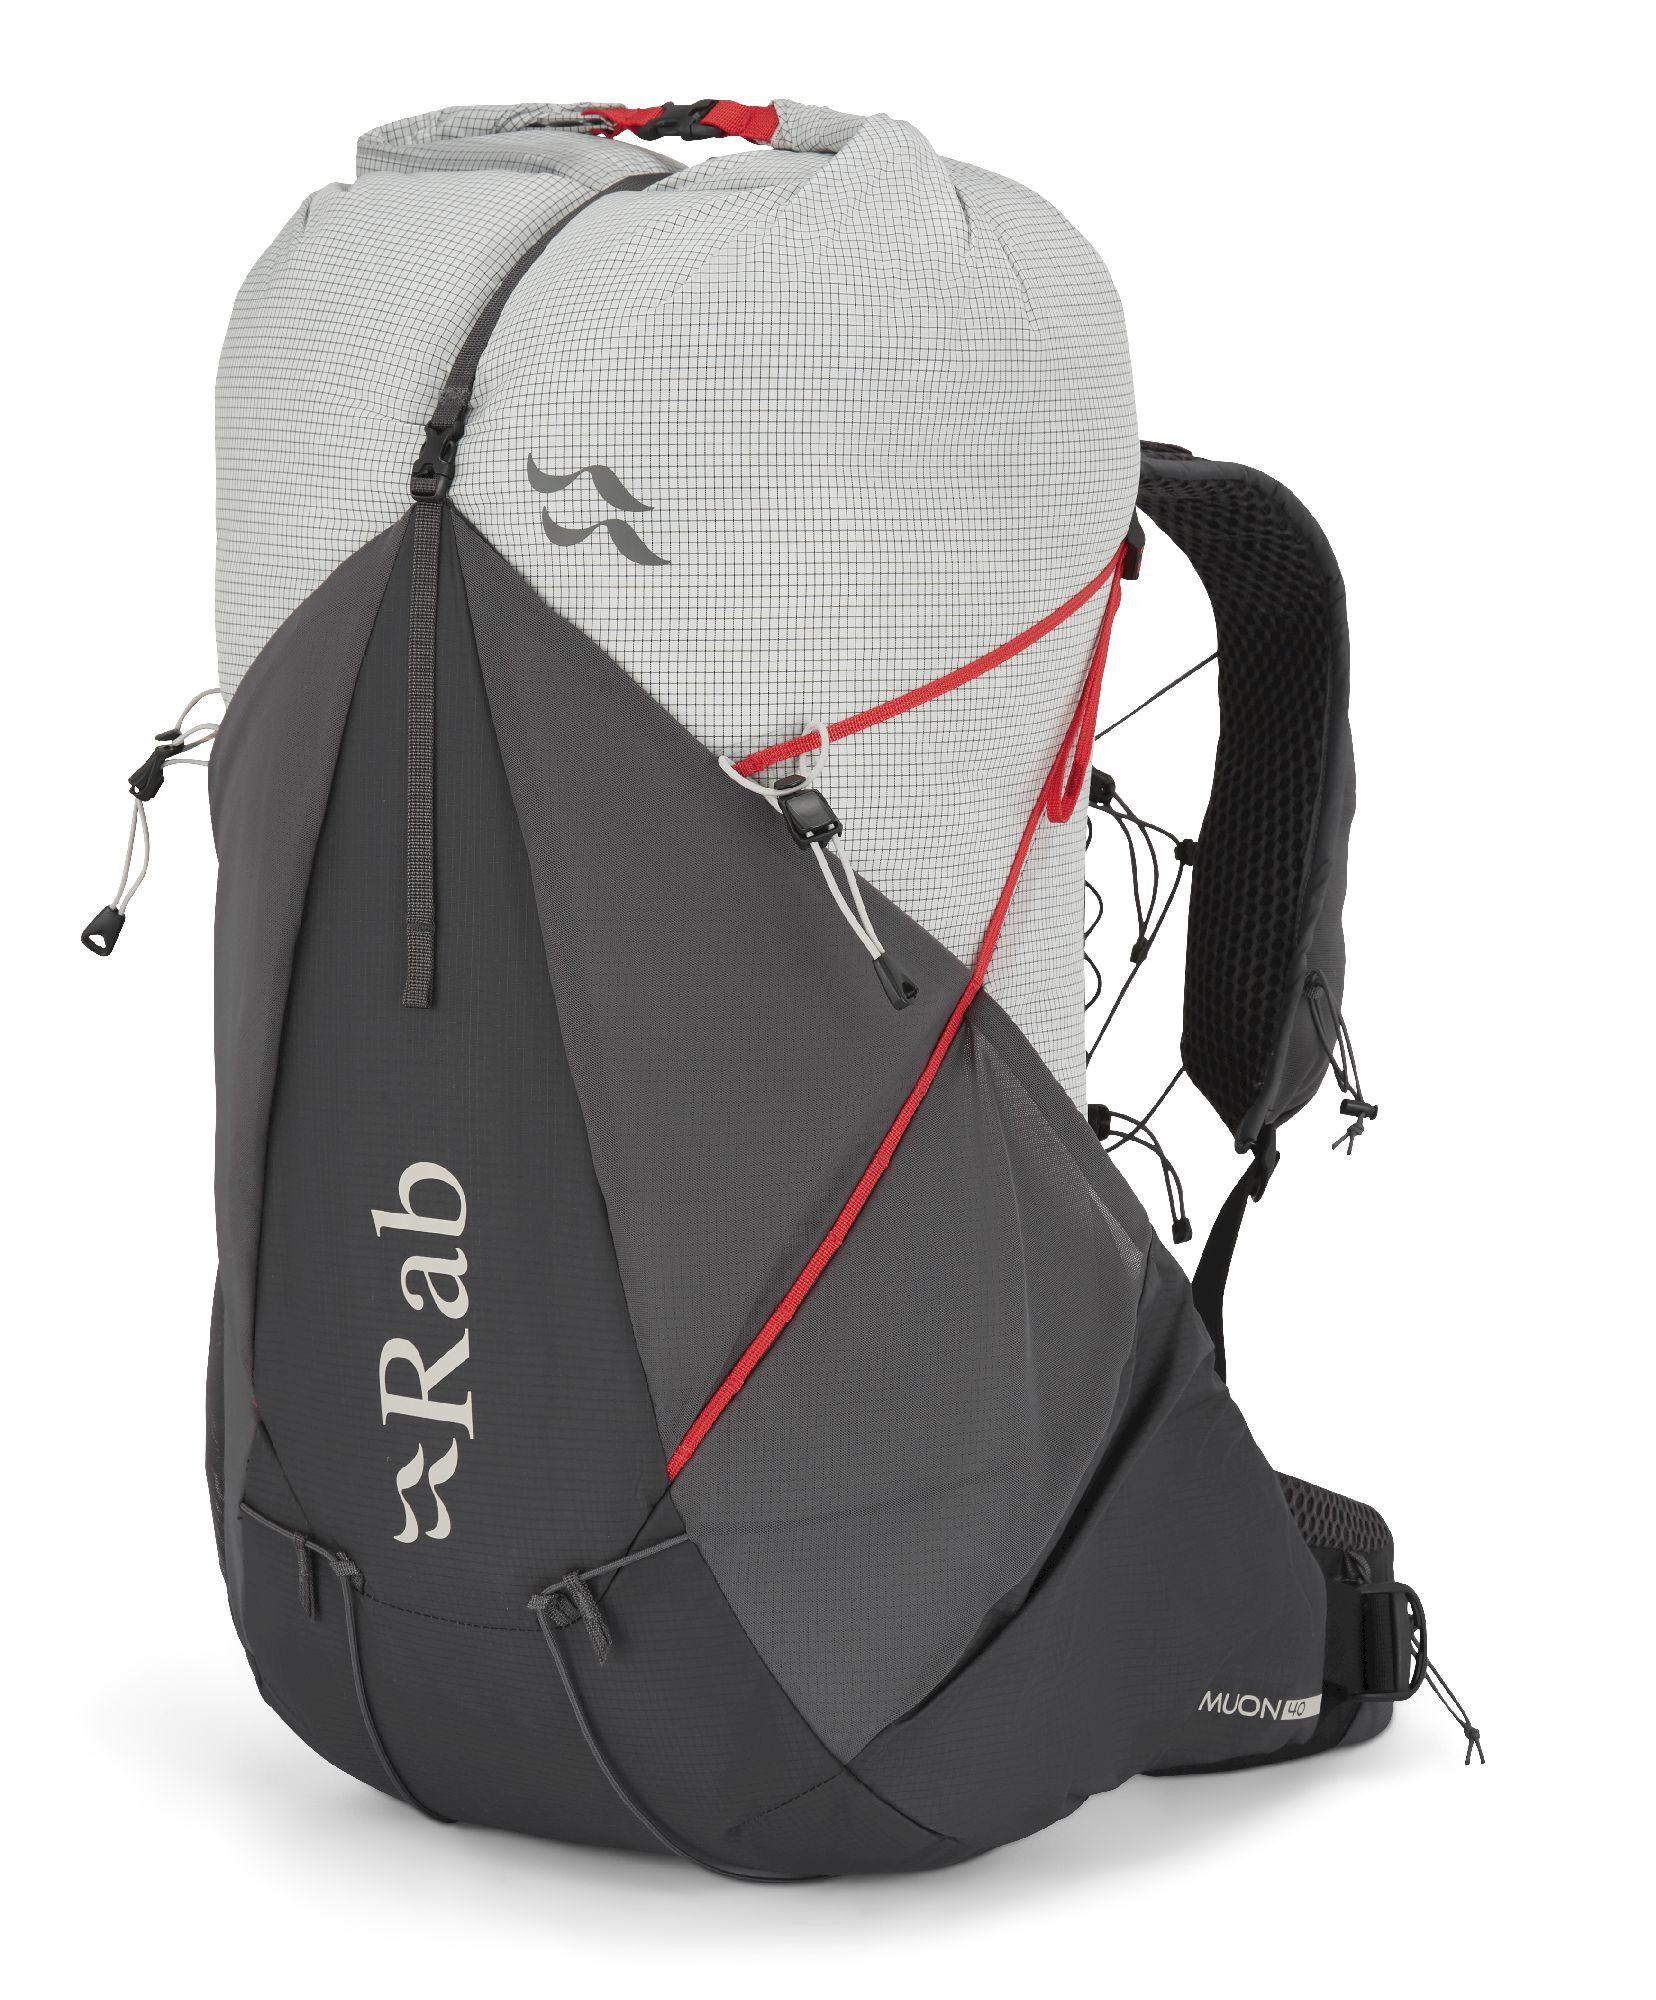 Rab Muon 40 - Walking backpack - Men's | Hardloop